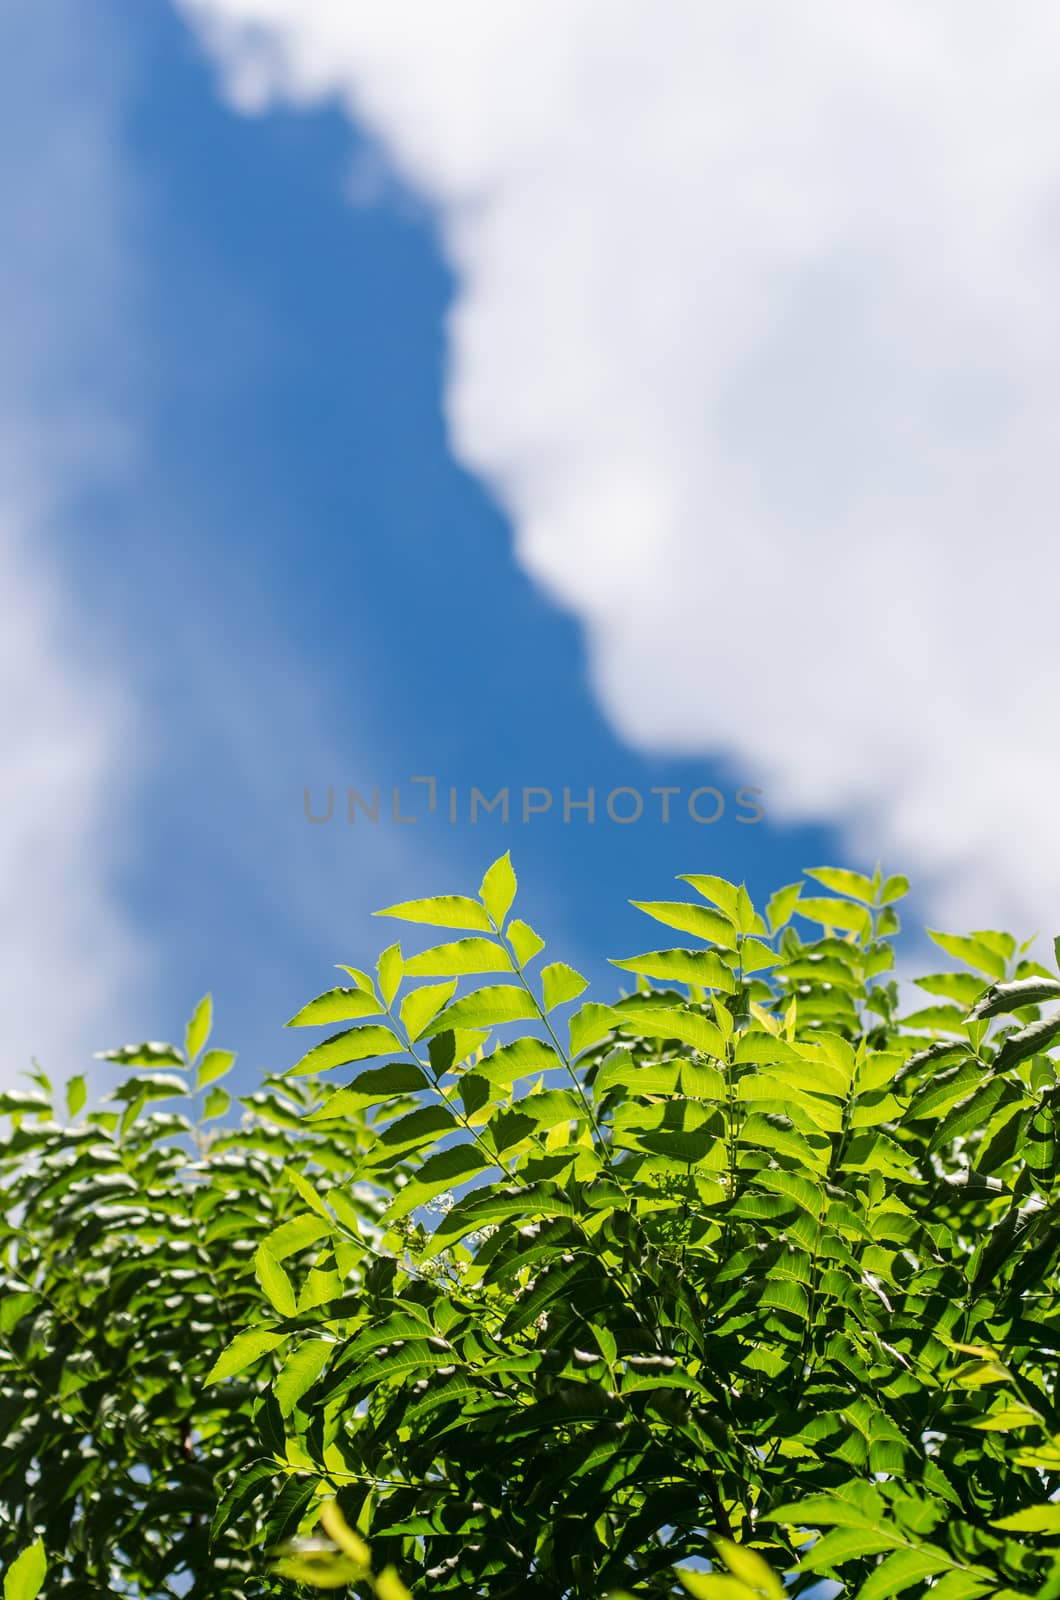 Neem plant with nice sky background by pixbox77